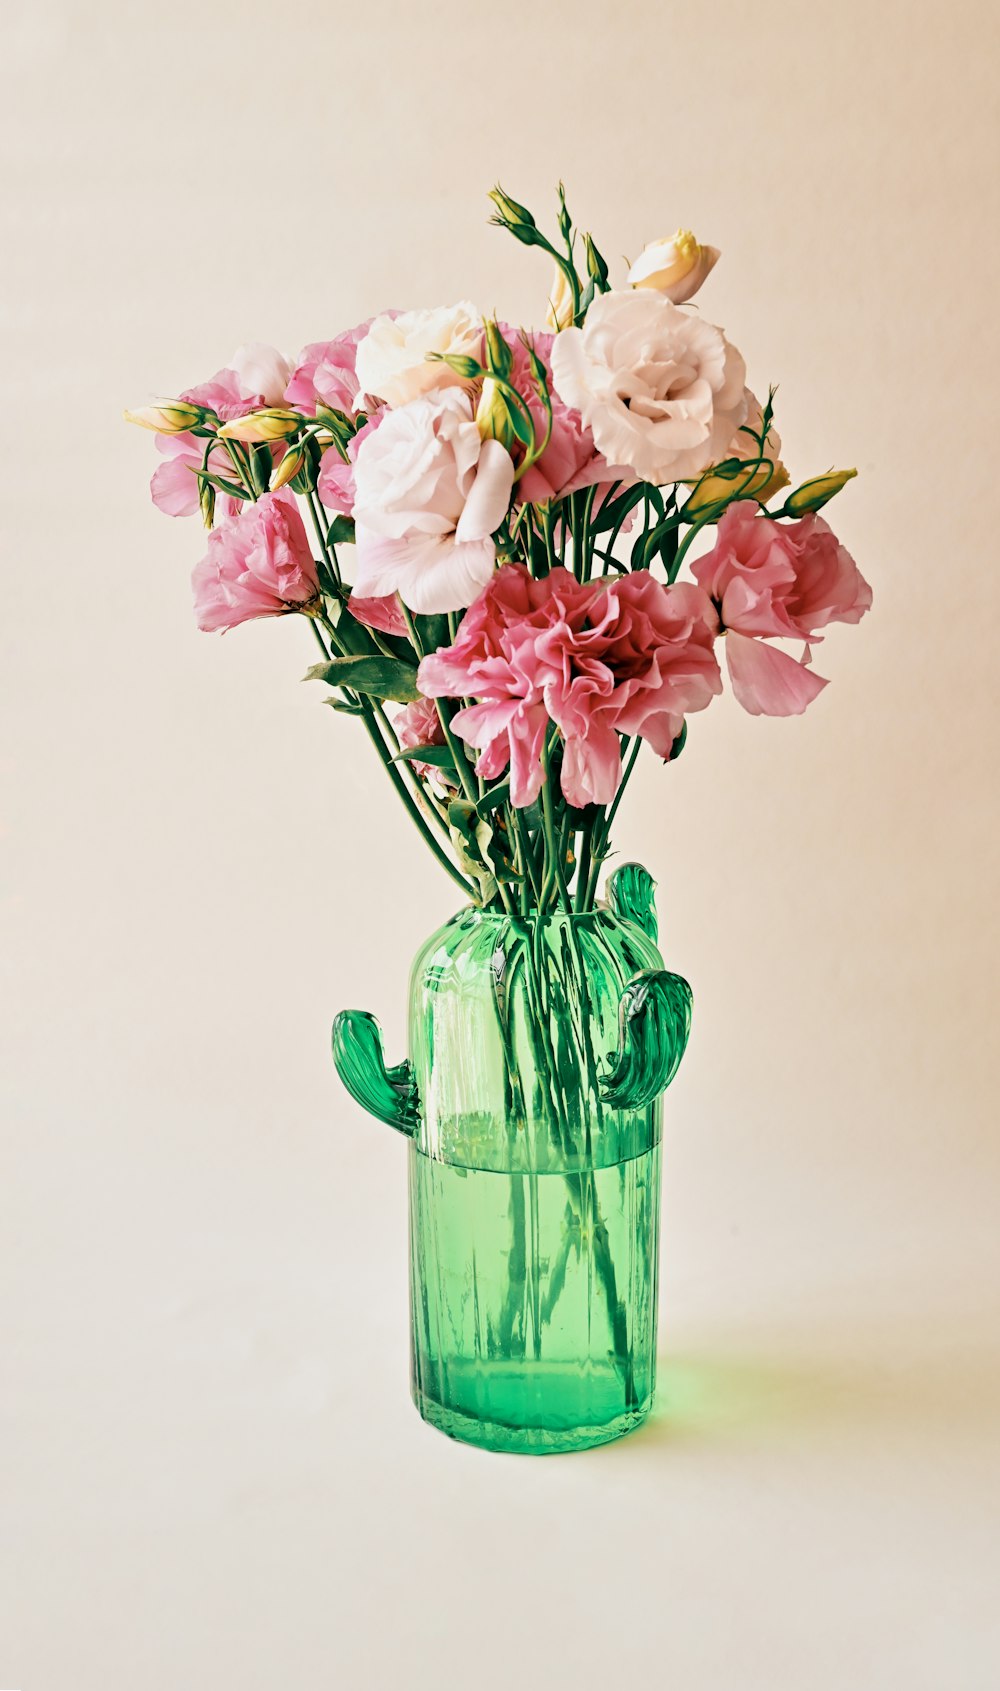 ピンクと白の花、緑のガラスの花瓶